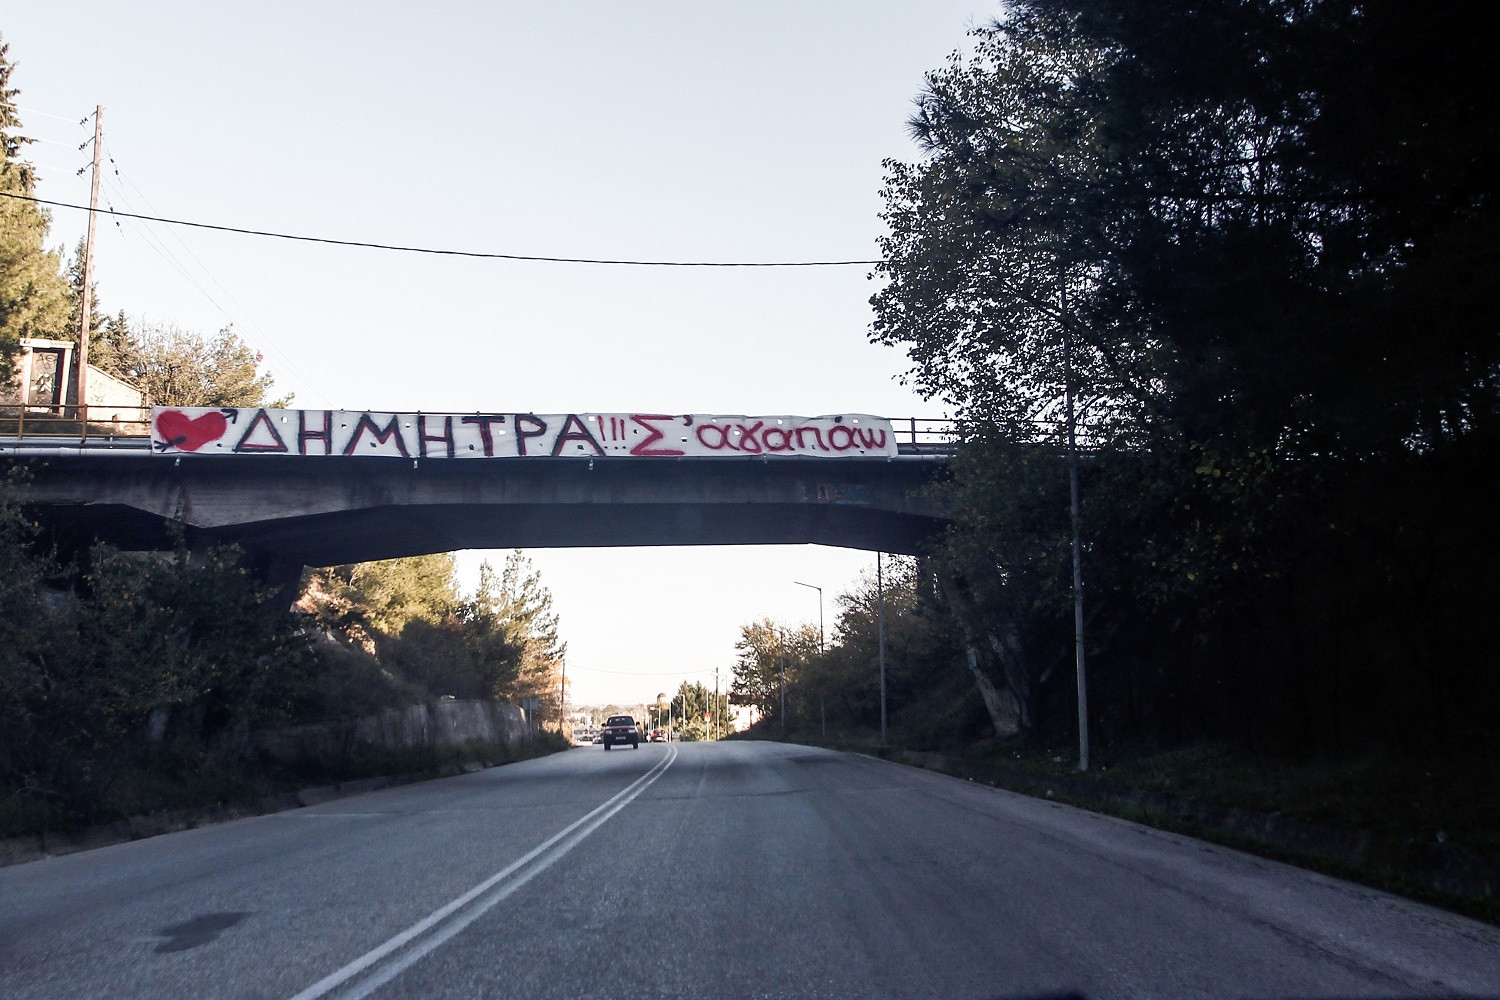 Τρίκαλα - «Δήμητρα, σ' αγαπώ»: Ερωτευμένος κρέμασε τεράστιο πανό σε γέφυρα